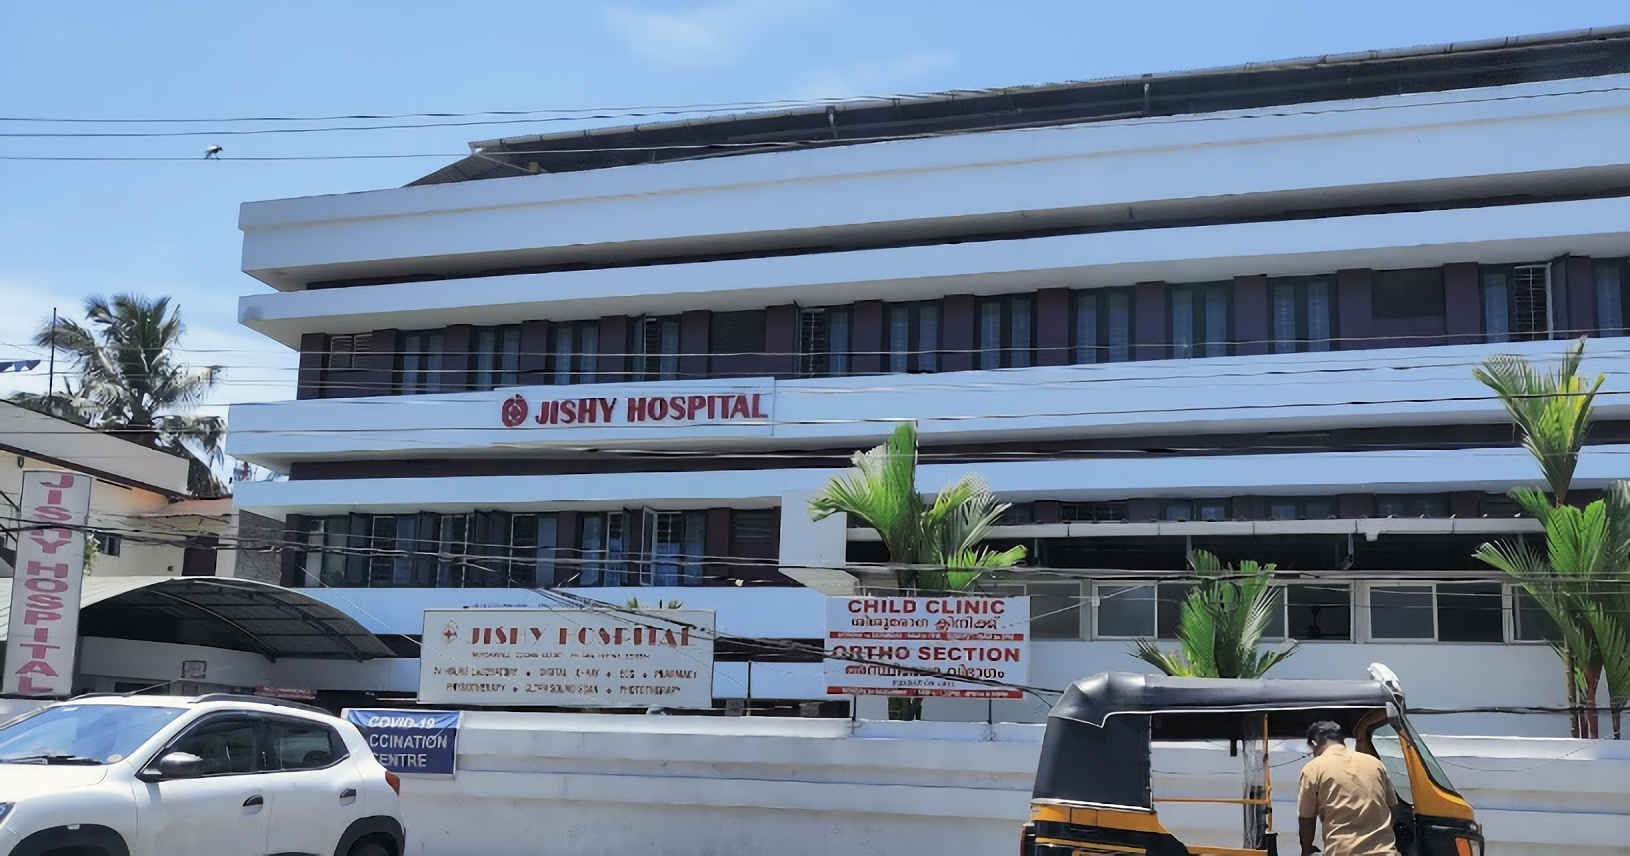 Jishy Hospital